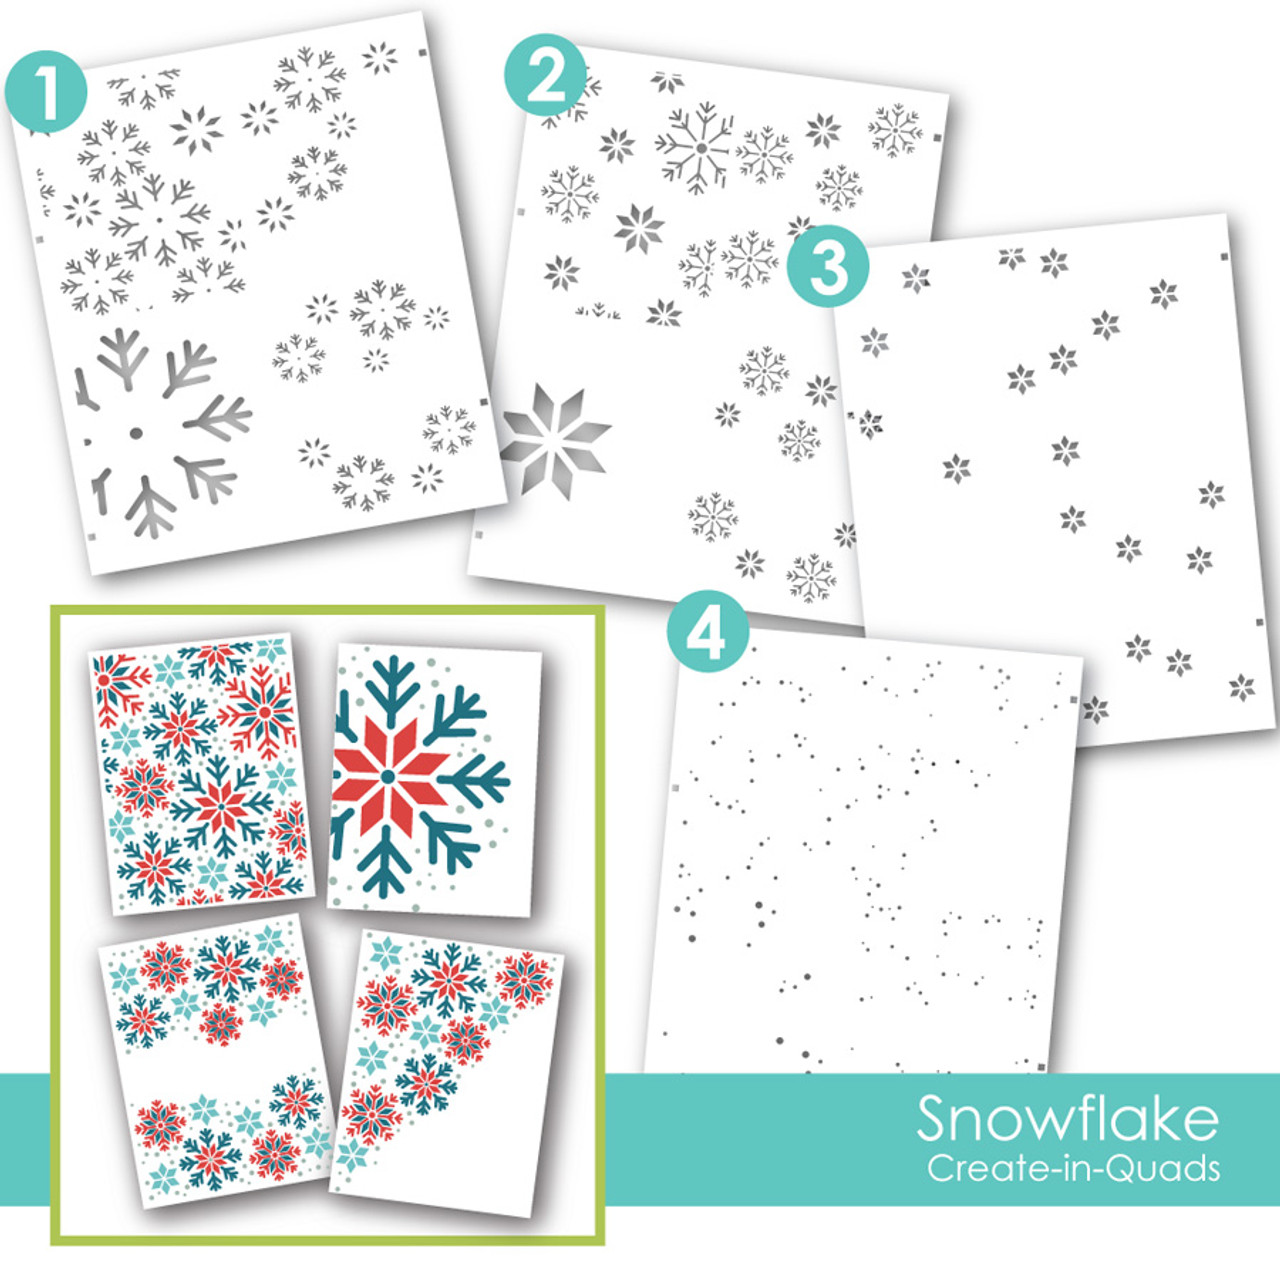 Snowflake Stencil 10  Snowflake stencil, Christmas stencils, Free stencils